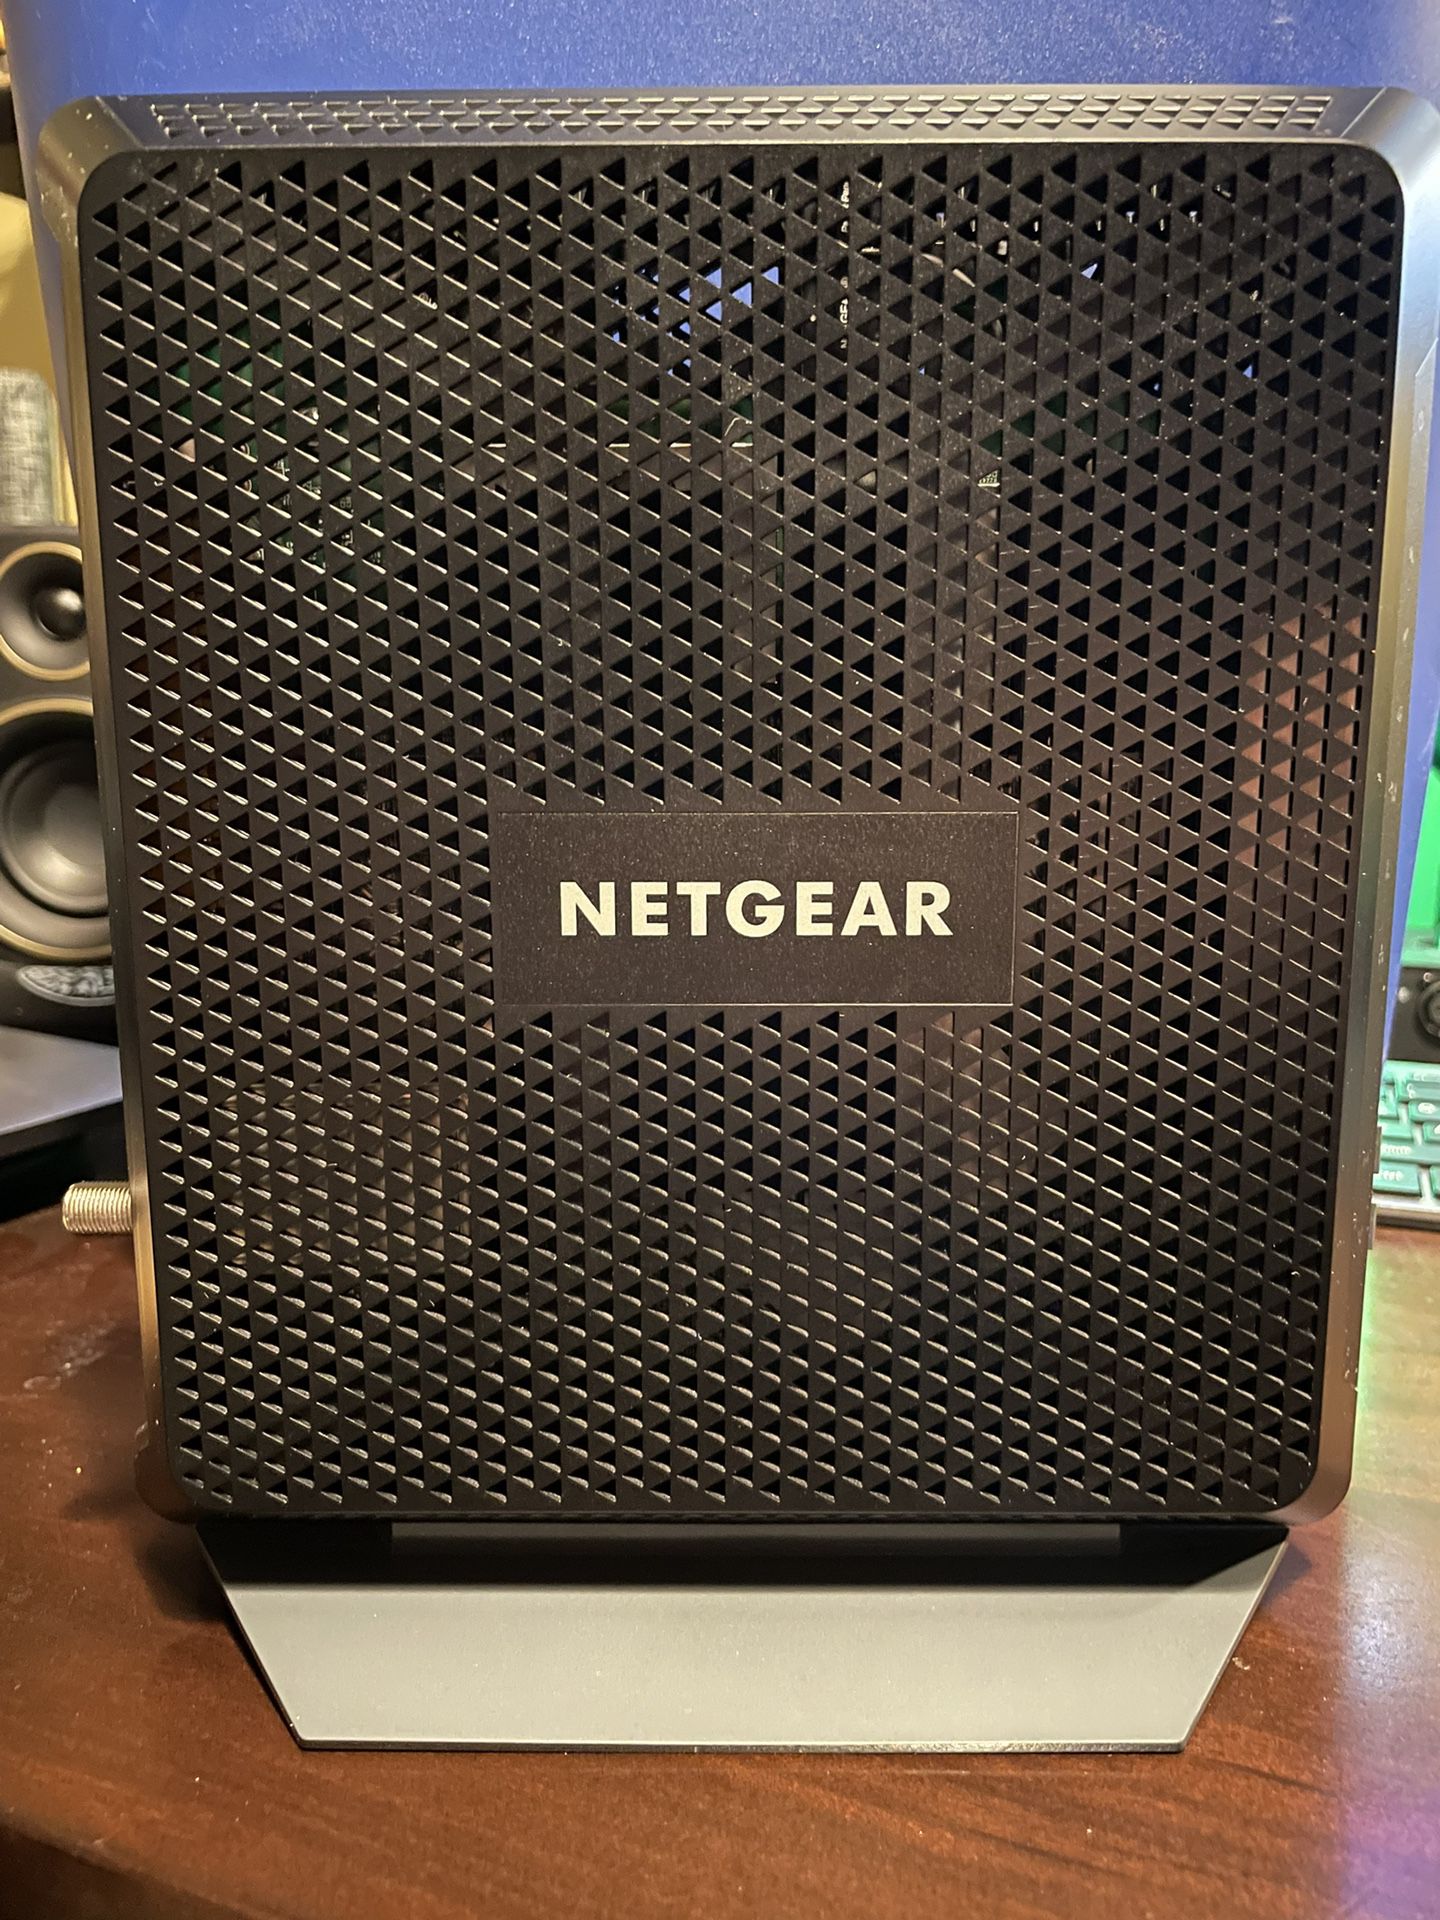 NETGEAR Wi-Fi Modem/Router And Extender 